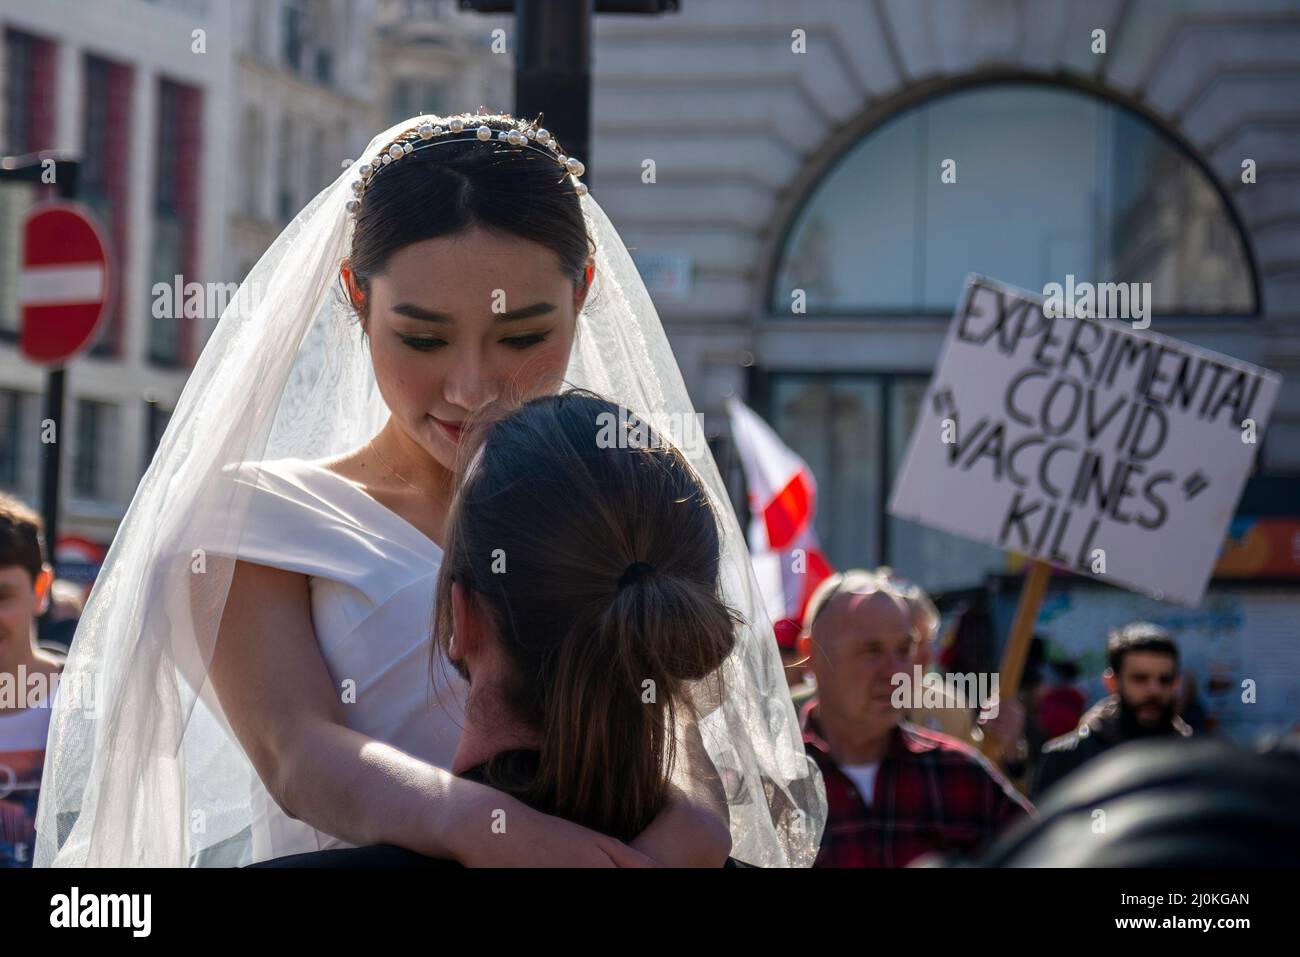 Une manifestation contre la vaccination des enfants contre Covid 19, rejointe par des anti-vaxxers, interrompant un photoshoot de mariage avec une épouse asiatique ignorant Banque D'Images